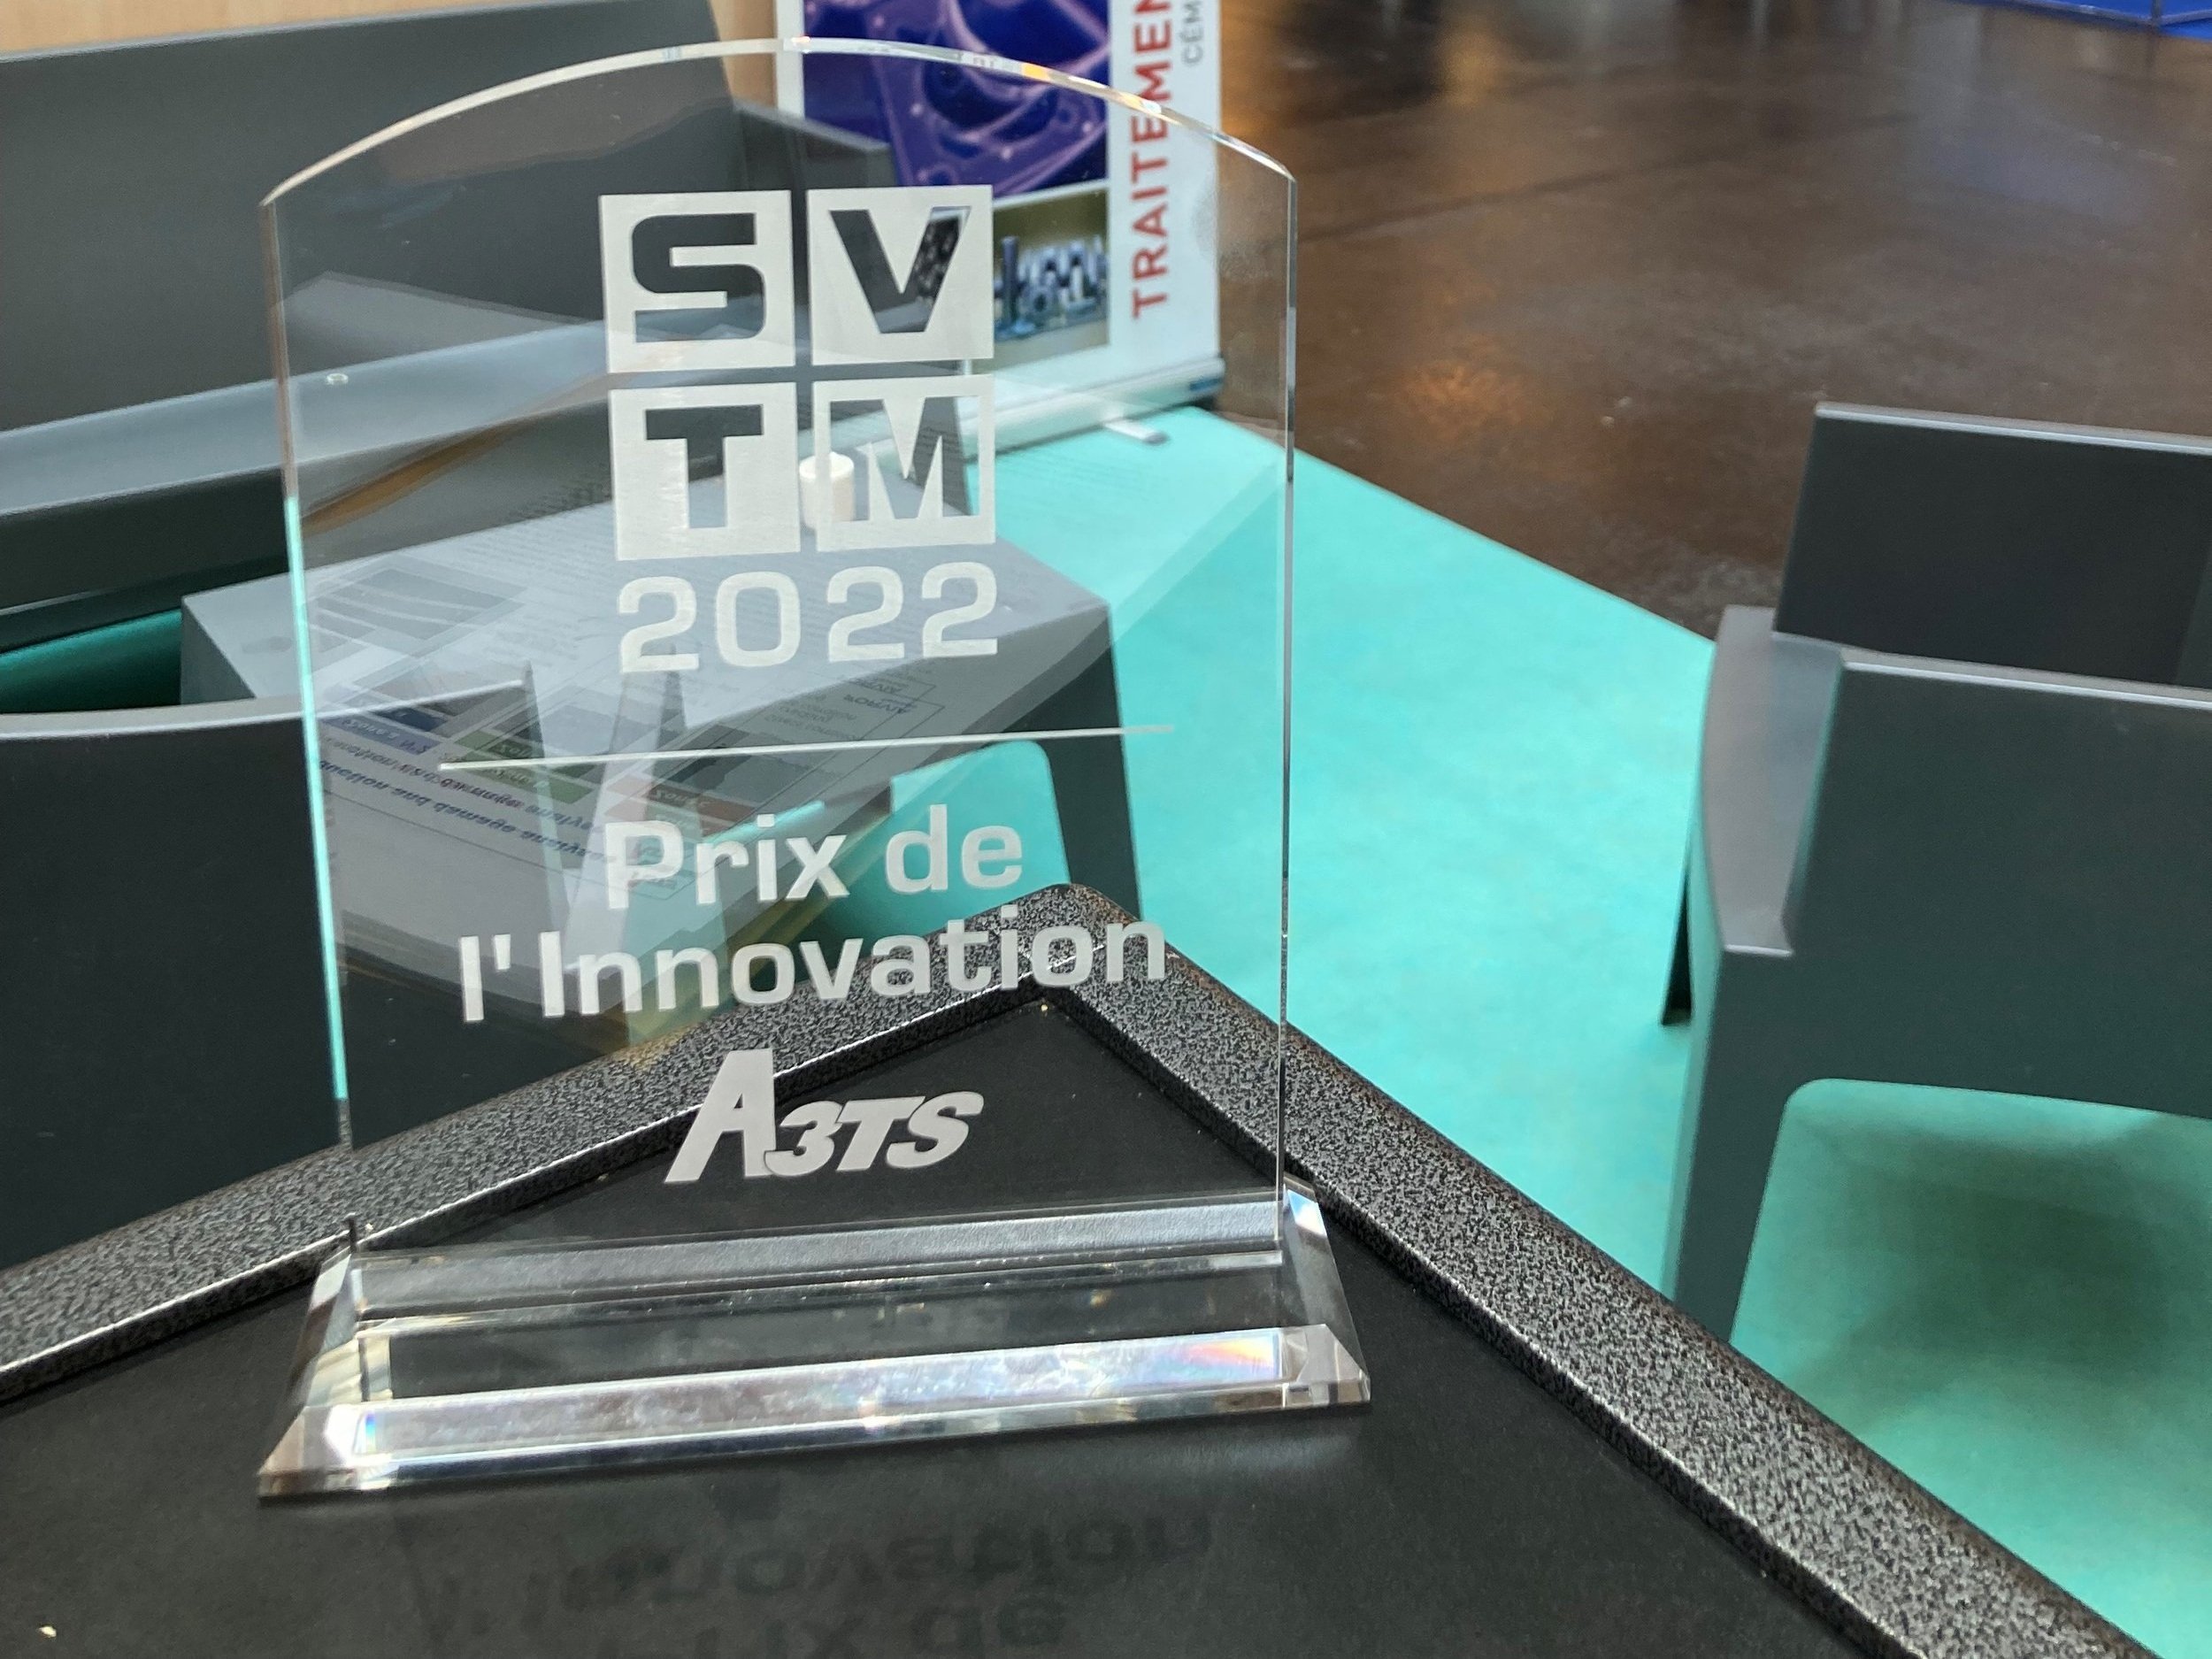 Innovation Award 2022